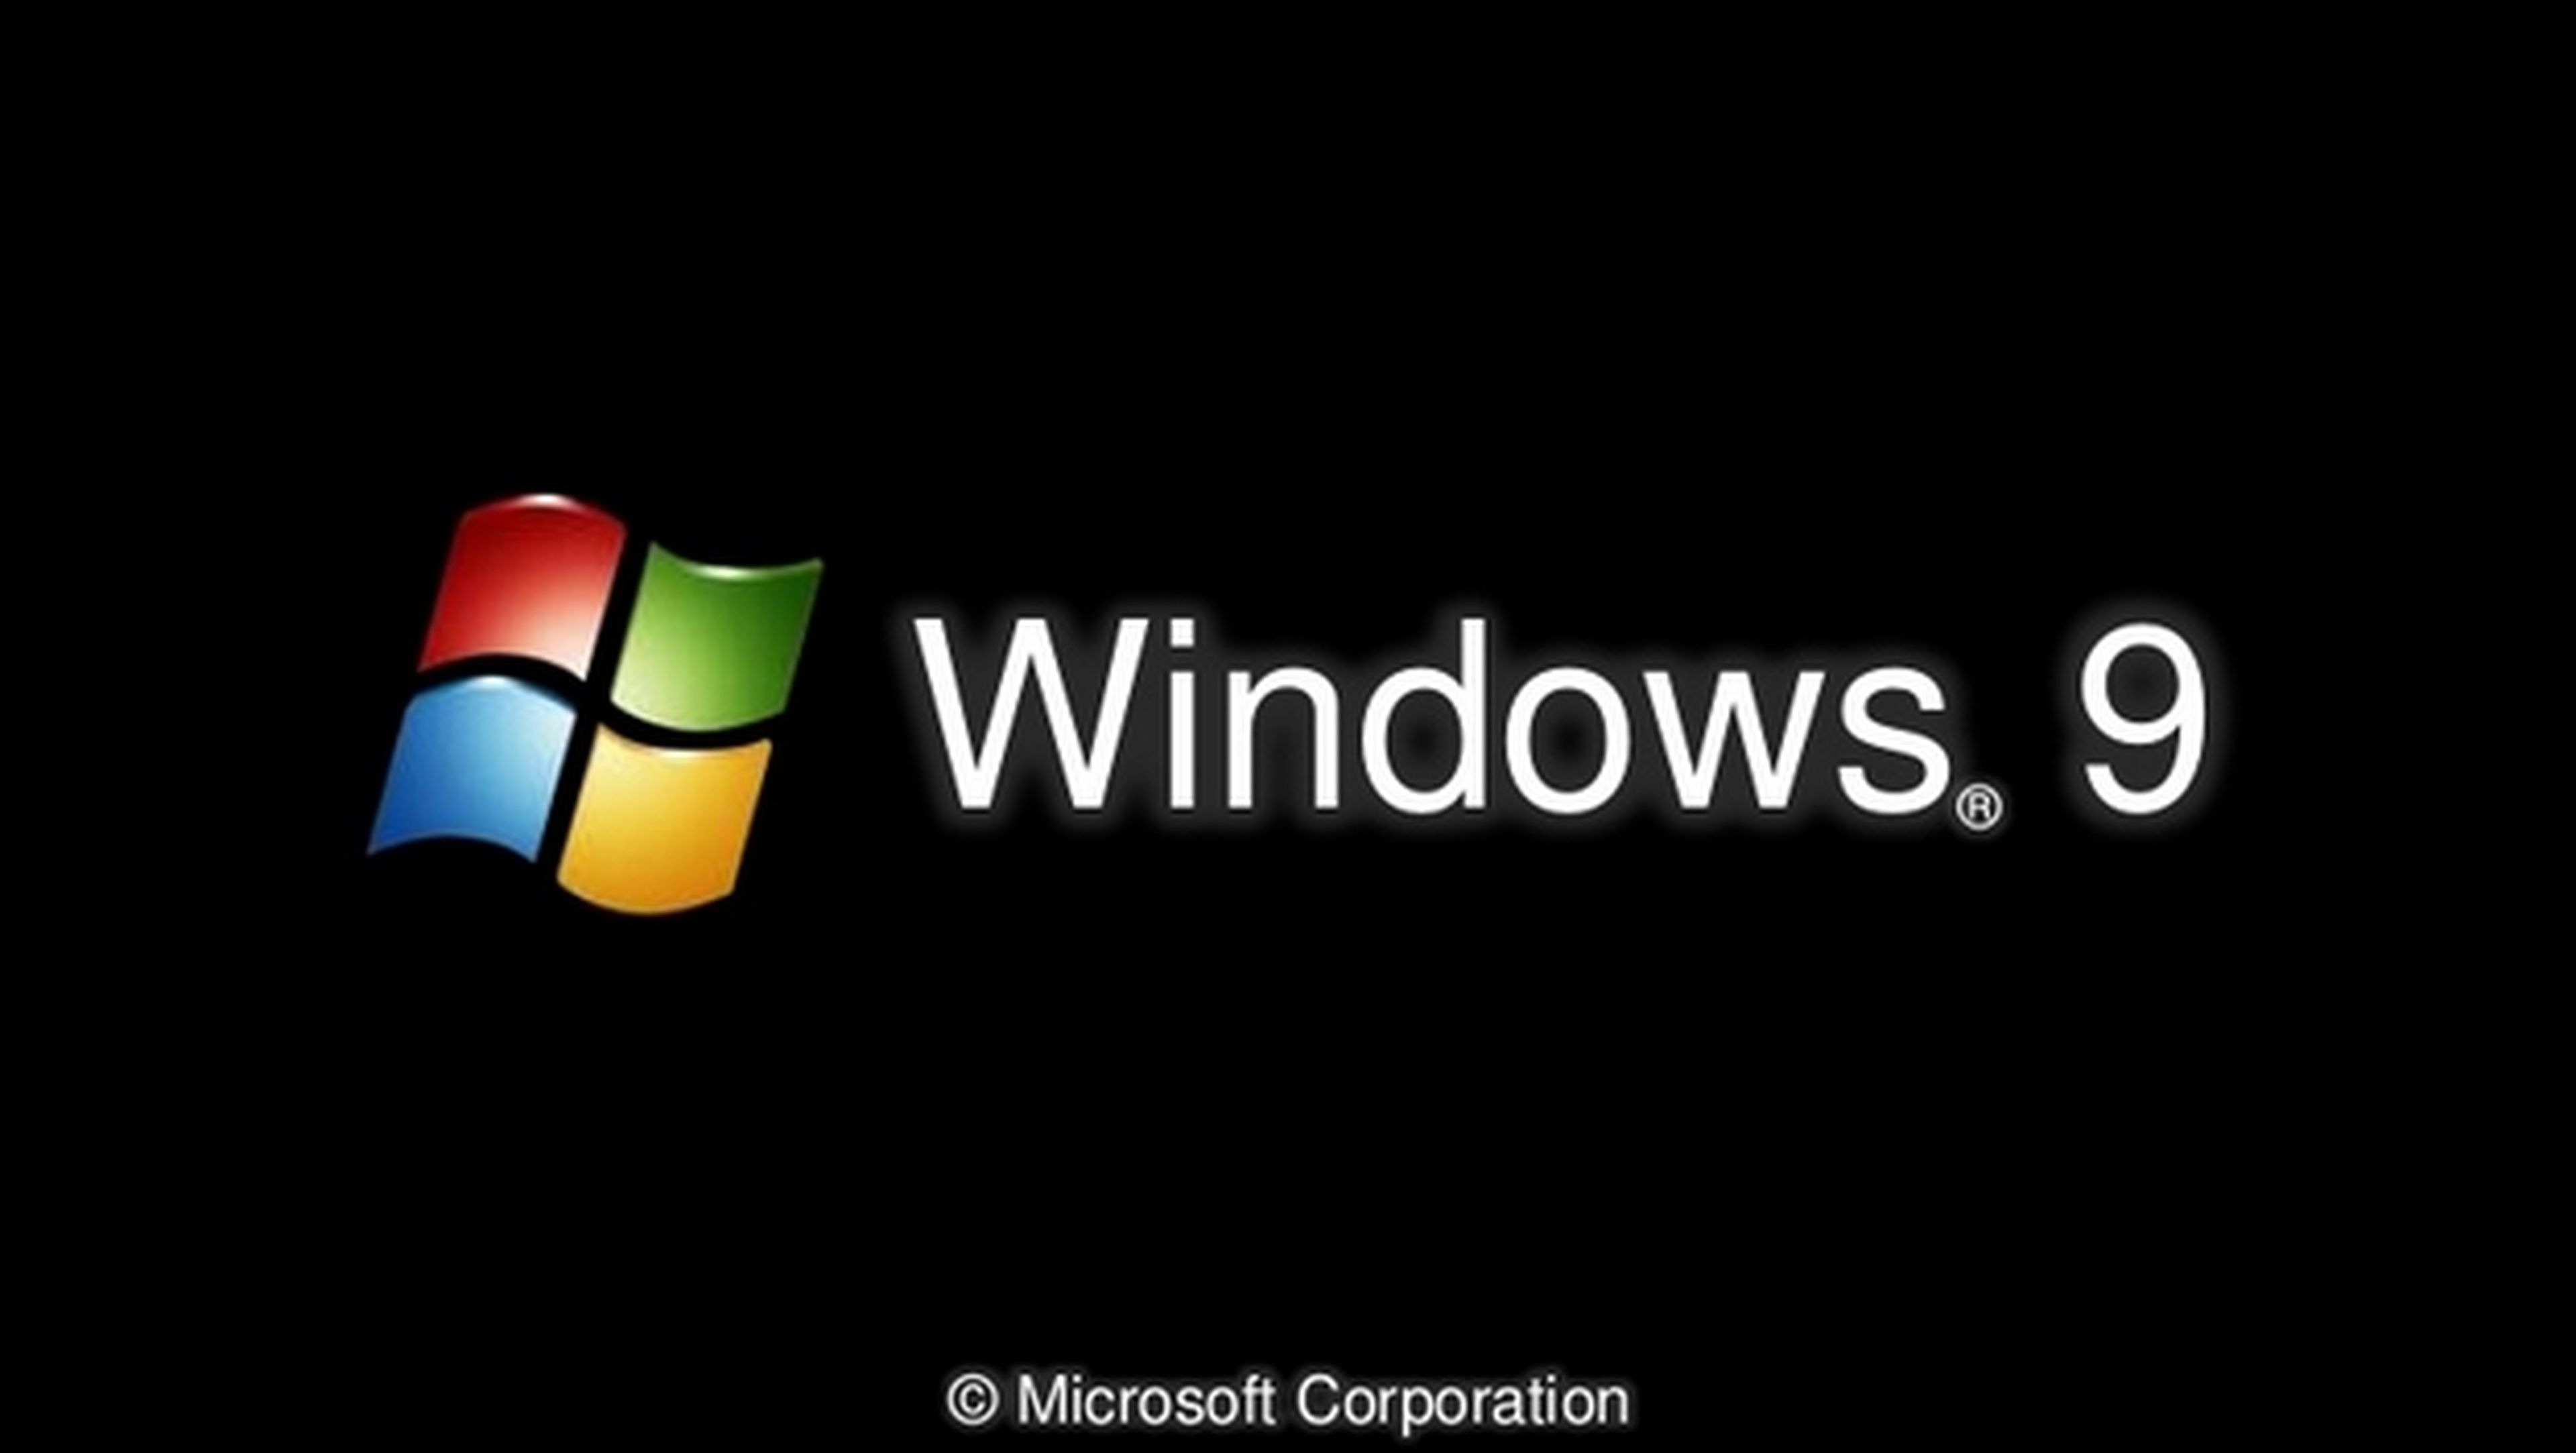 Windows 9 gratuito o muy barato para los usuarios de Windows 8.2. La actualización Windows 8.2 se da por hecha.